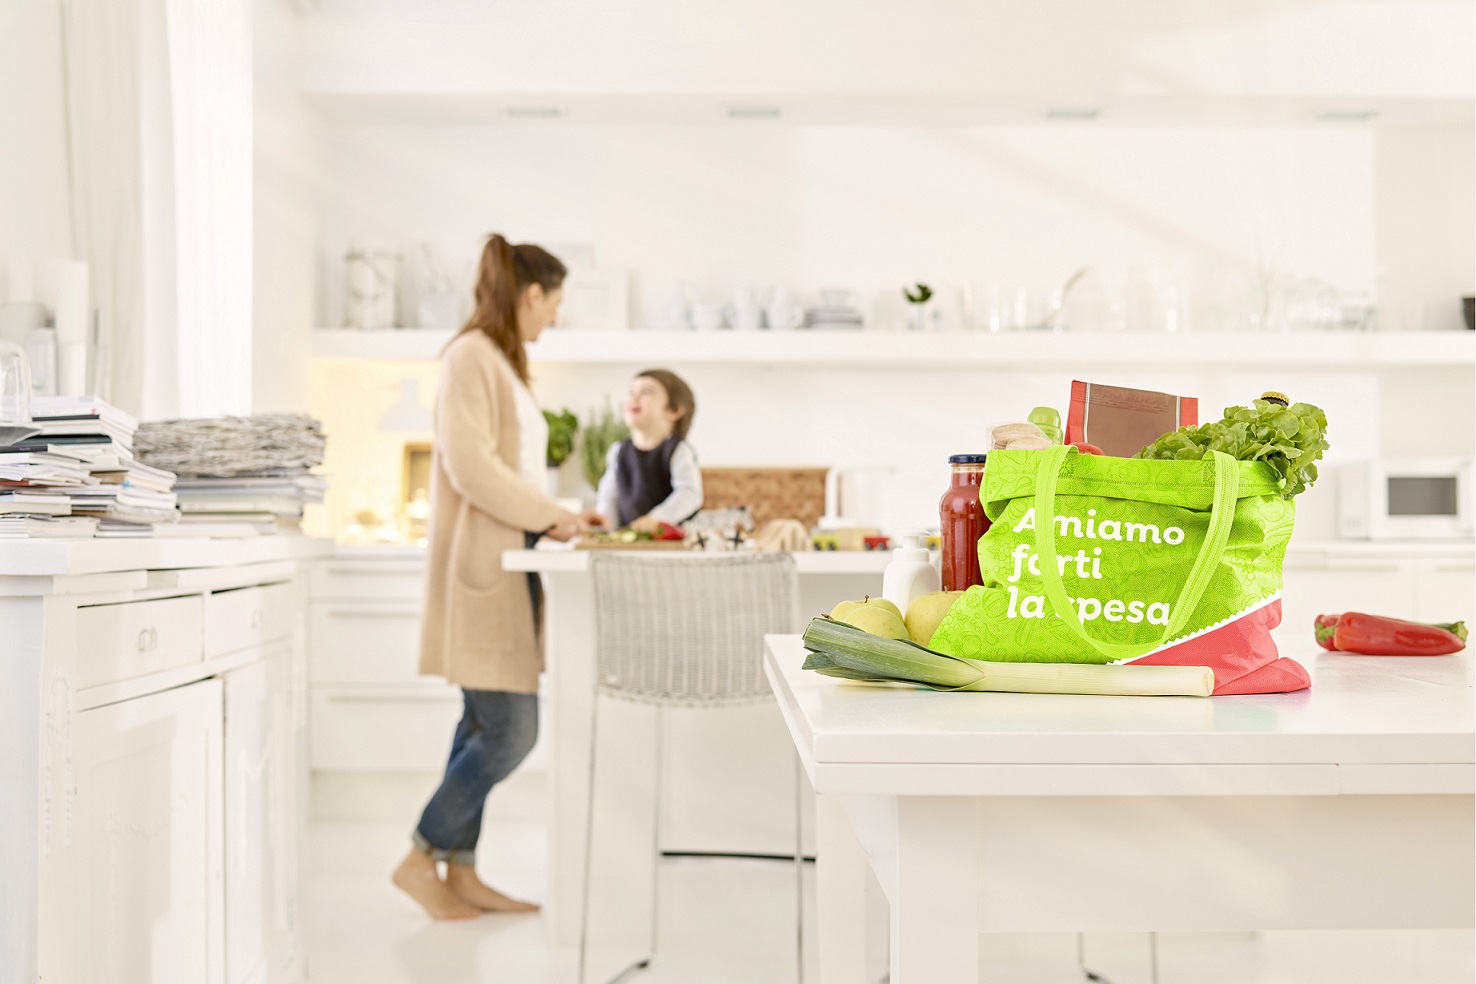 Supermercato24 consegna gratisai clienti over 65 di Milano